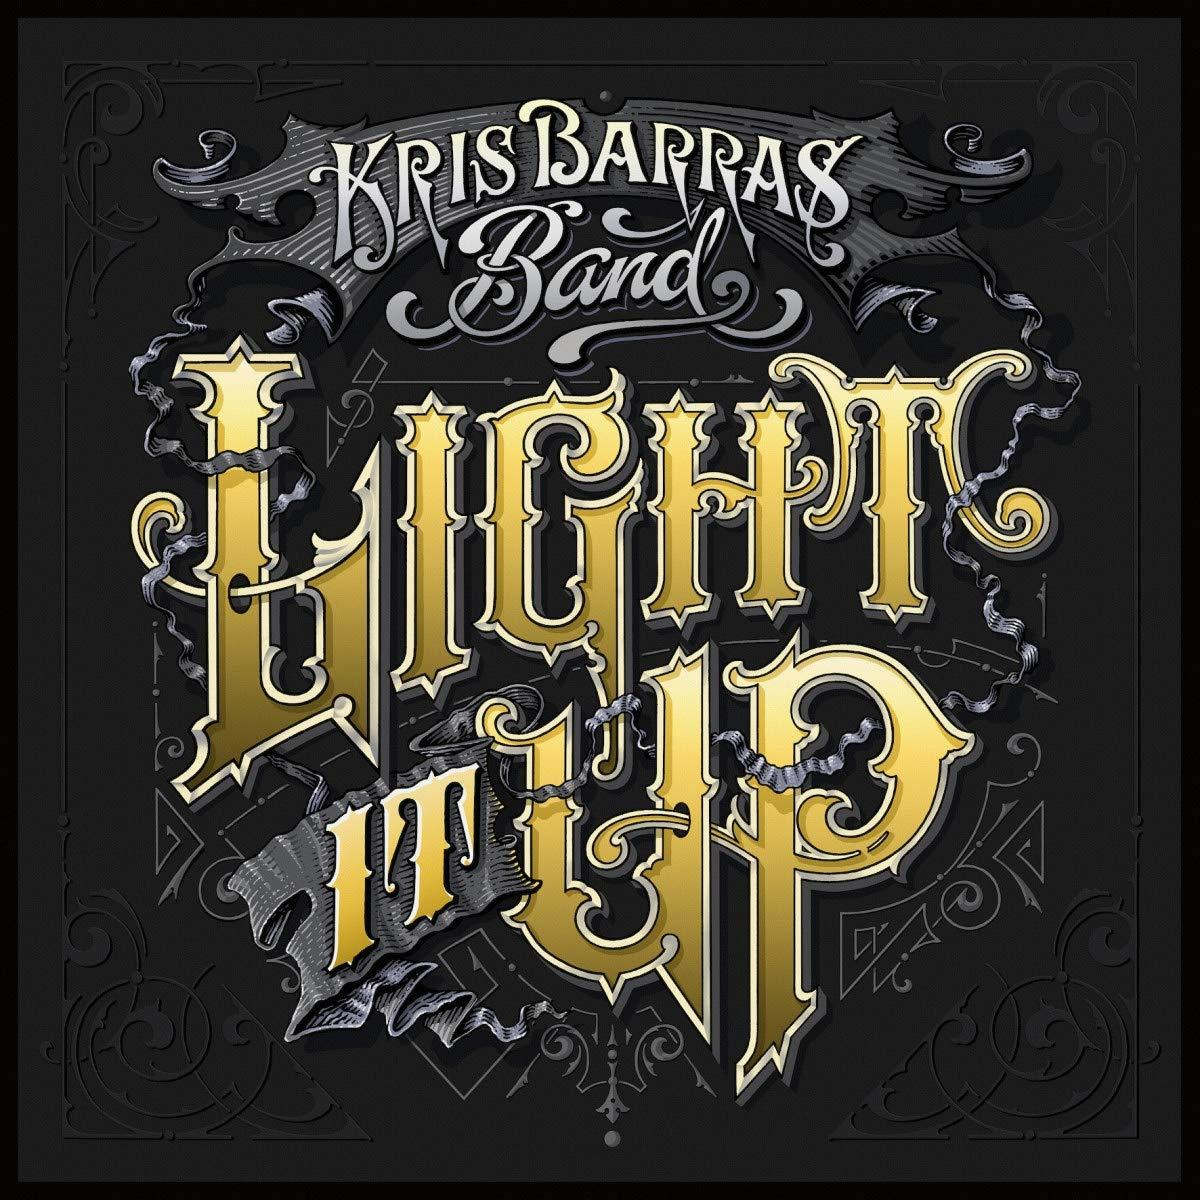 - Barras Kris - Band Light Up (CD) It